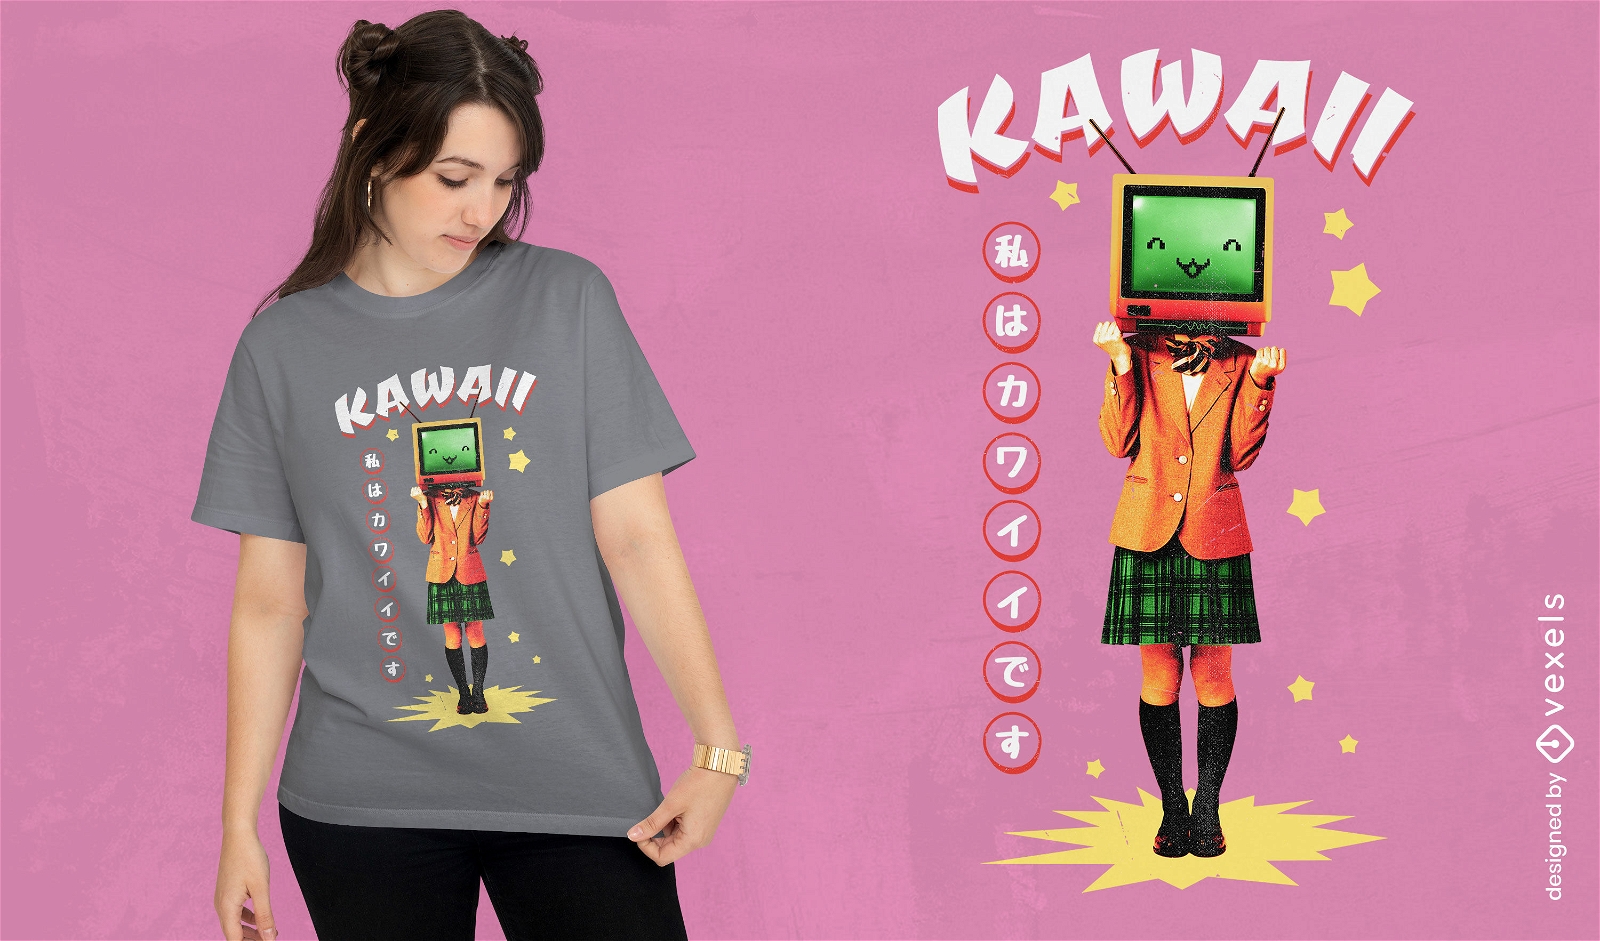 Kawaii Fernsehm?dchen T-Shirt Design